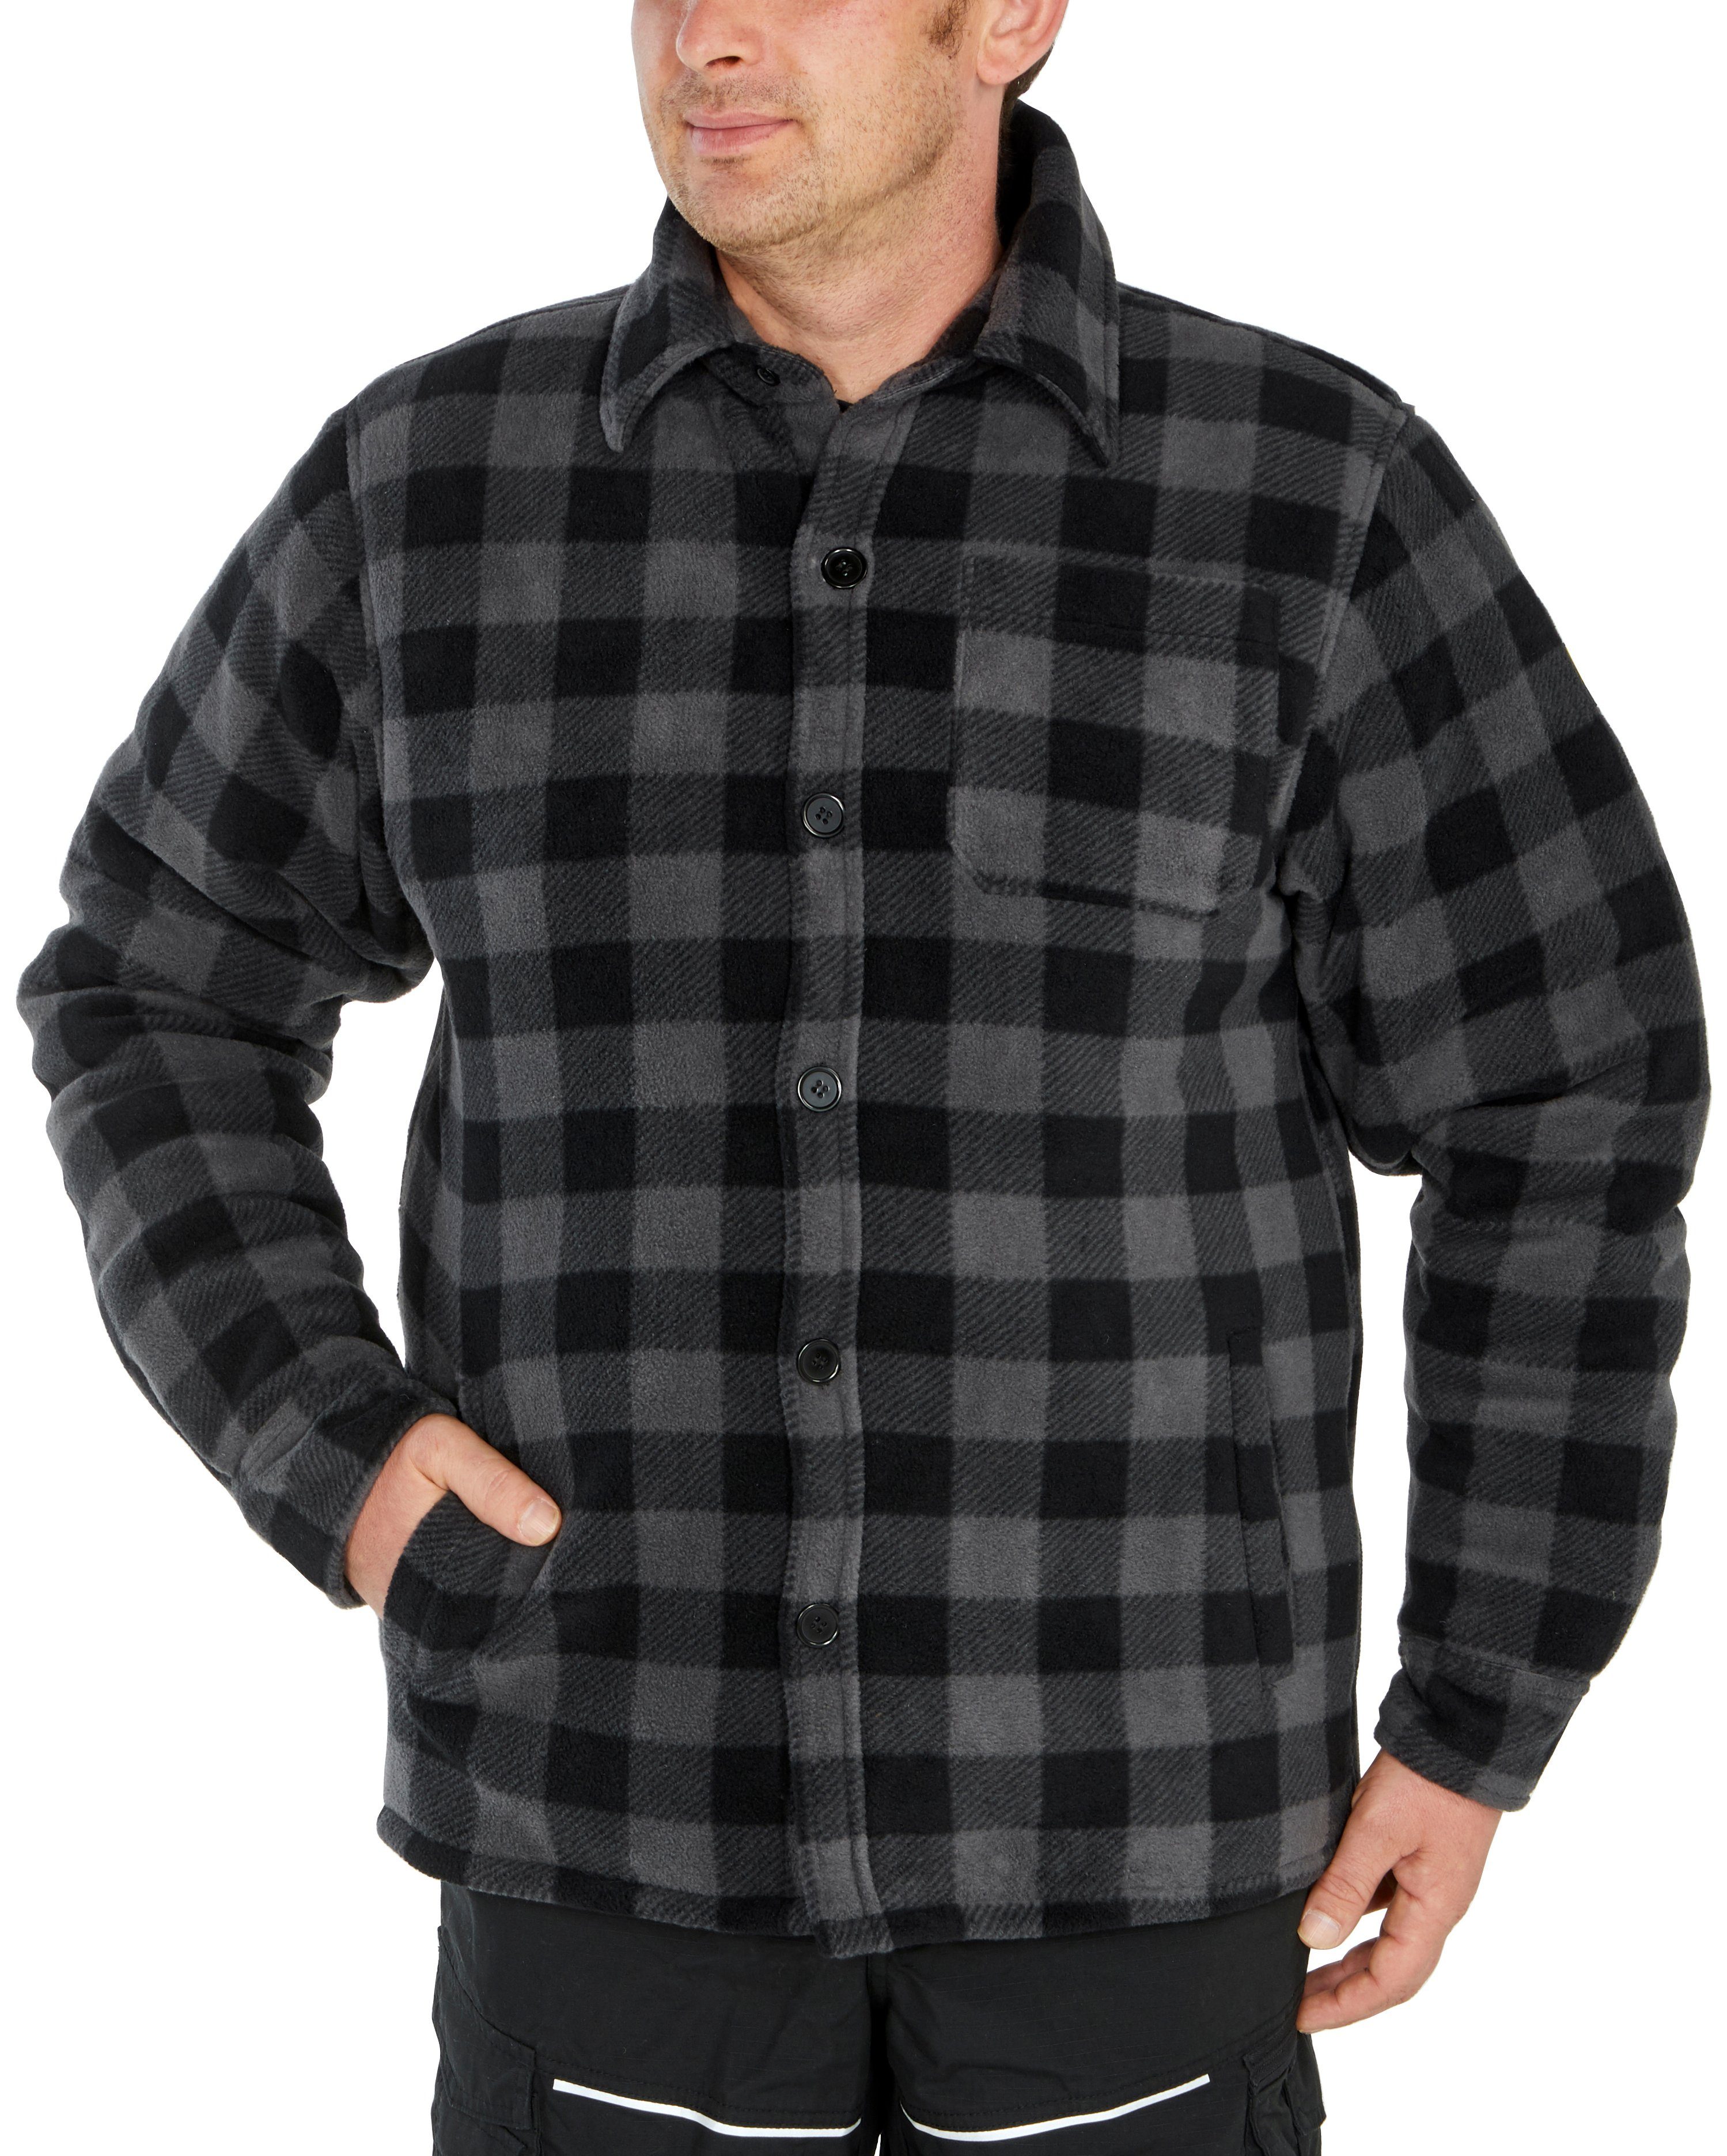 Northern Country Hemd zu 5 zugeknöpft offen oder verlängertem Jacke Rücken, Flanellhemd Flanellstoff (als mit warm grau-schwarz tragen) gefüttert, mit Taschen